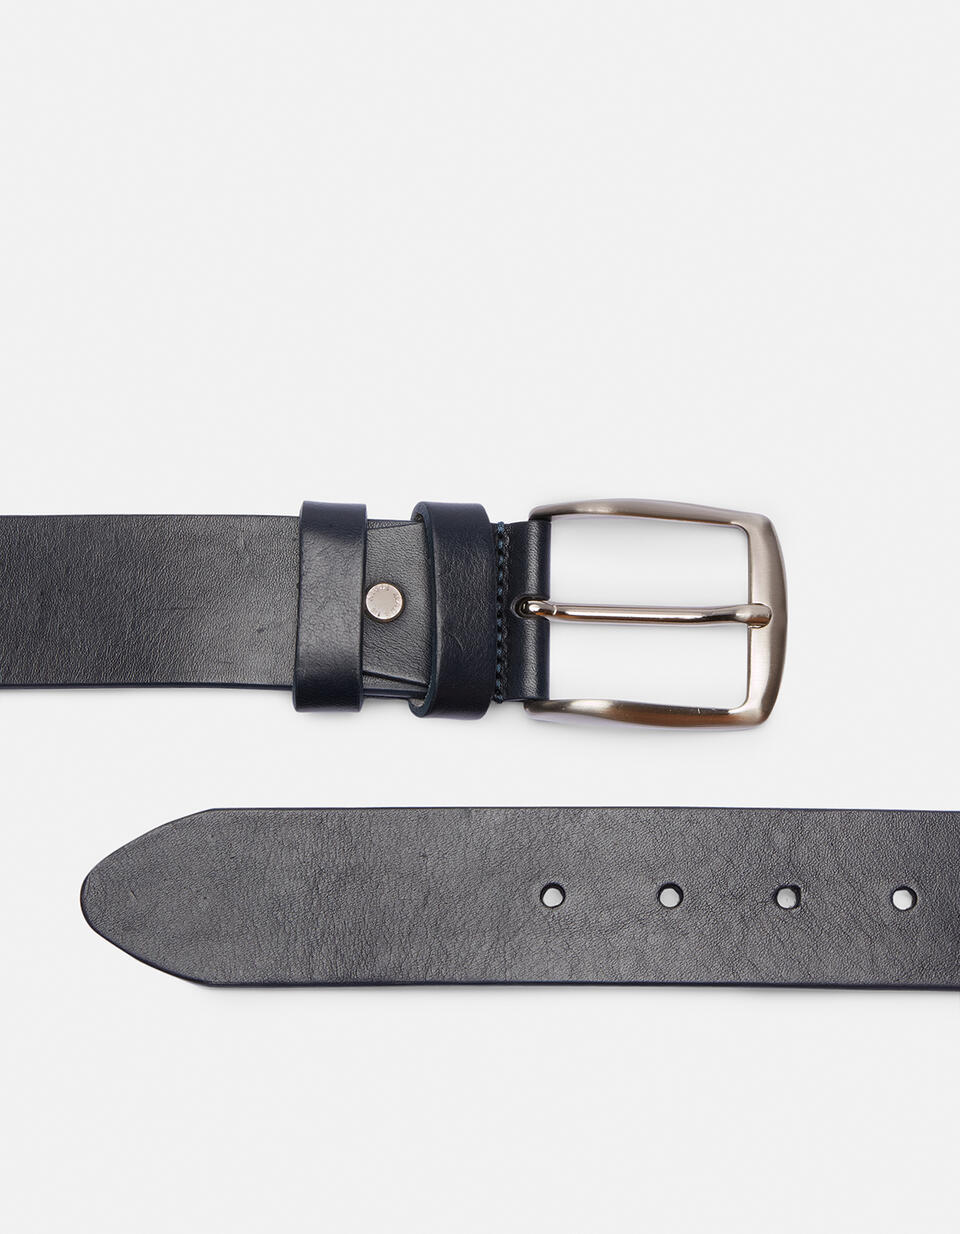 Cintura Classica in cuoio senza cuciture altezza 4,0 cm - CINTURE UOMO | CINTURE BLU - CINTURE UOMO | CINTURECuoieria Fiorentina